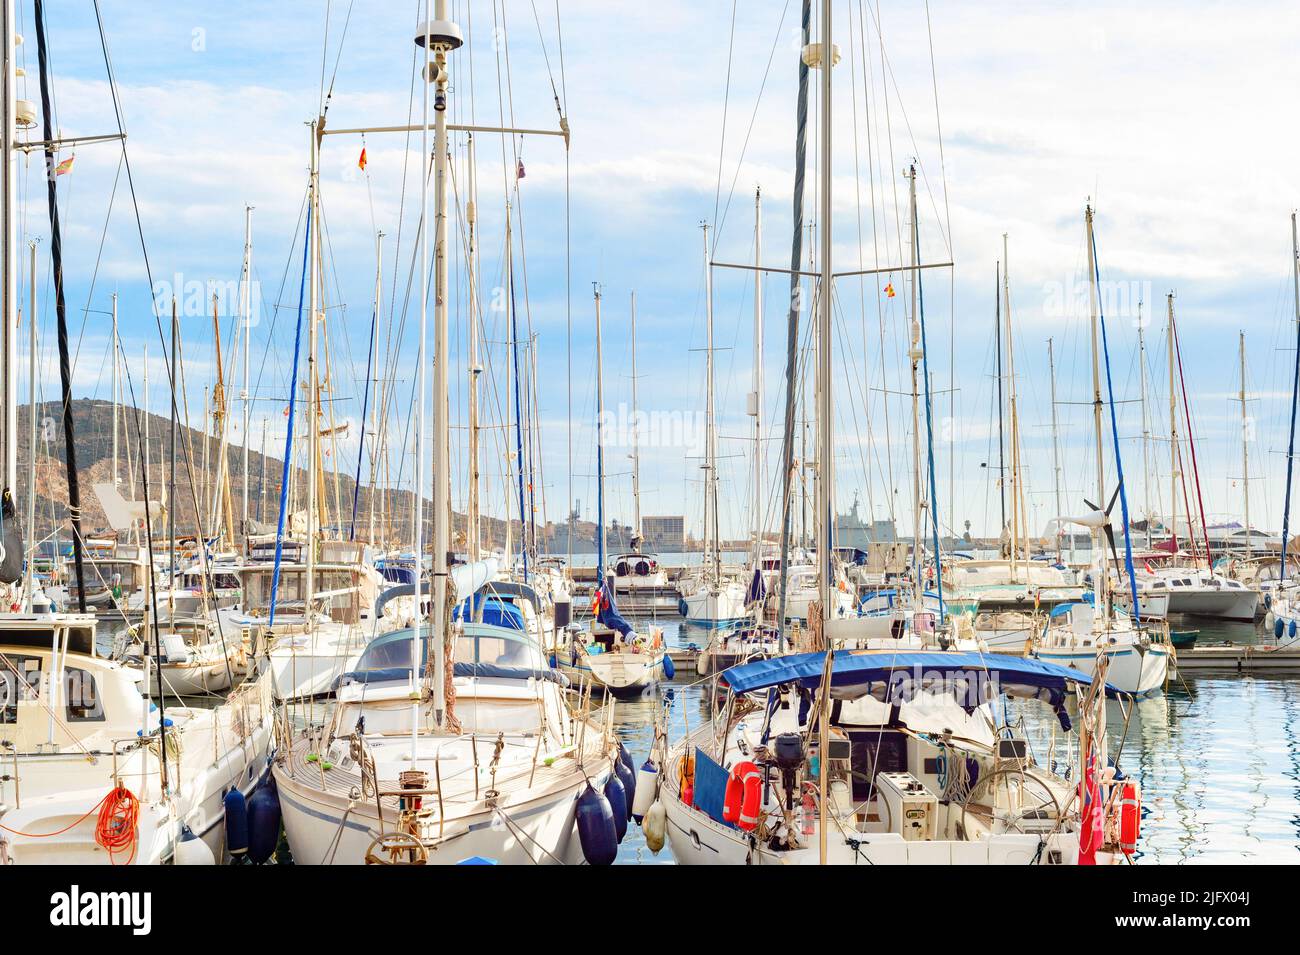 Luxury yachts moored in marina, Italy Stock Photo